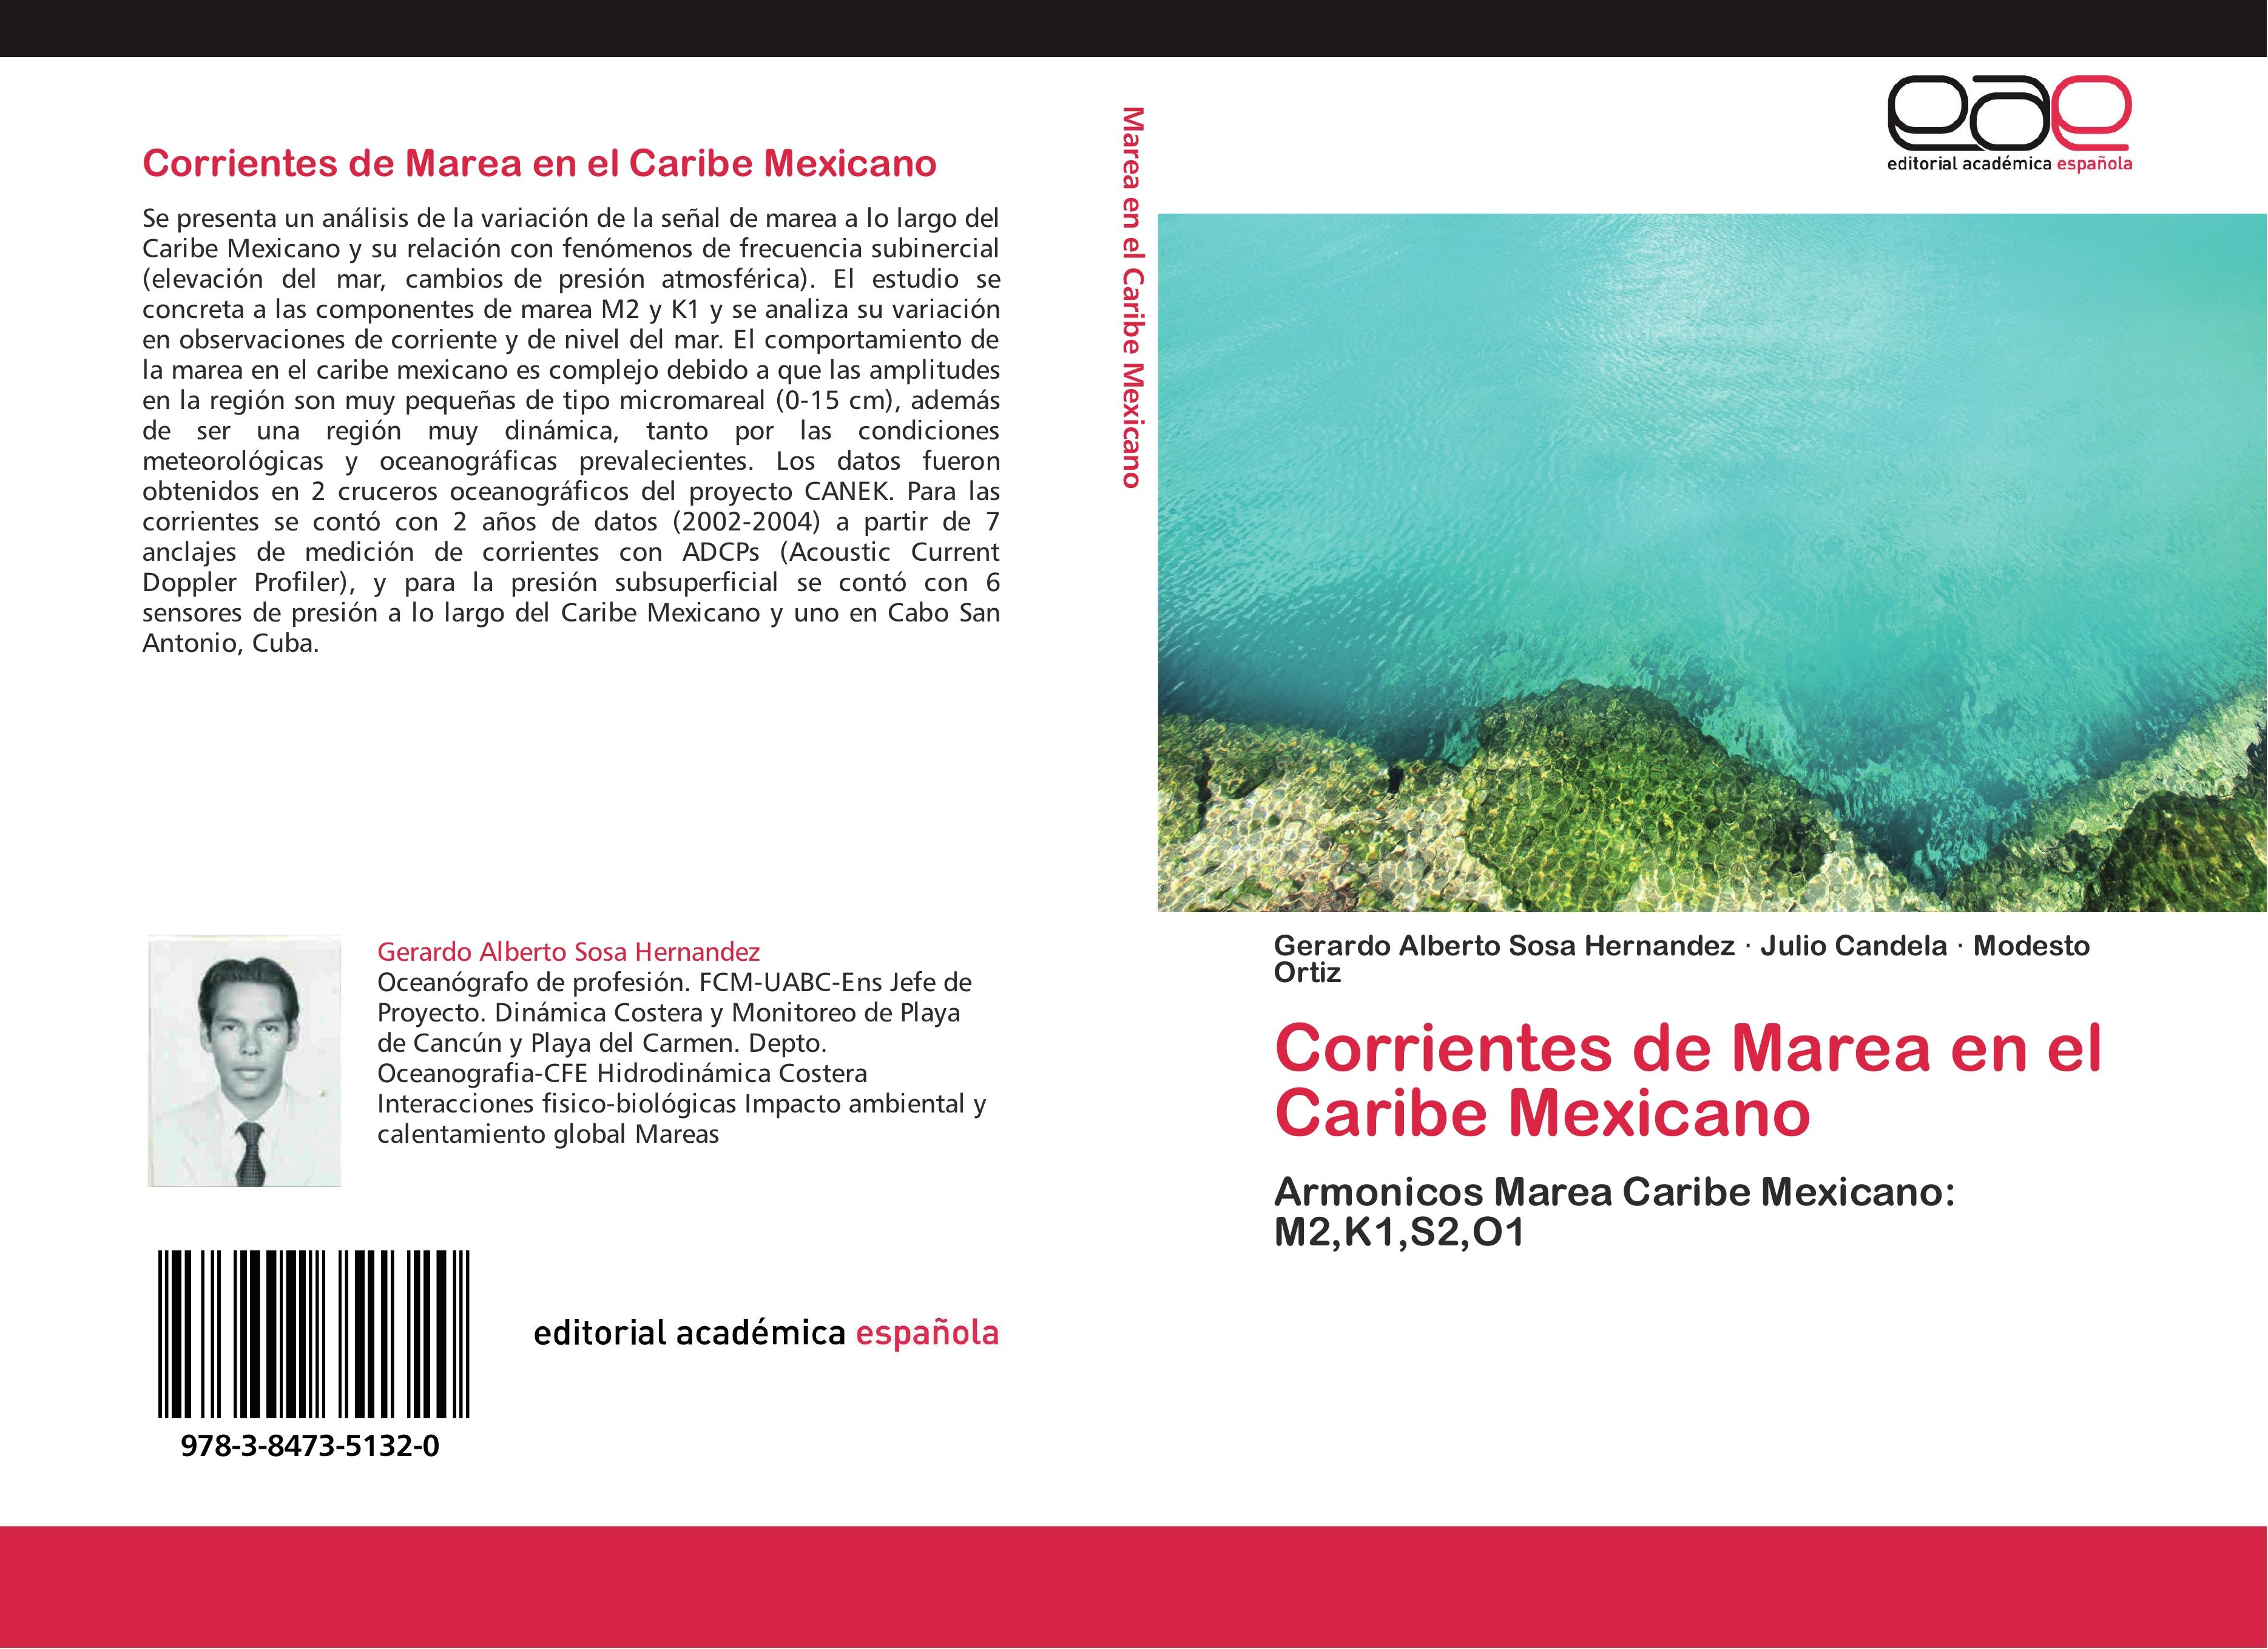 Corrientes de Marea en el Caribe Mexicano - Gerardo Alberto Sosa Hernandez Julio Candela Modesto Ortiz